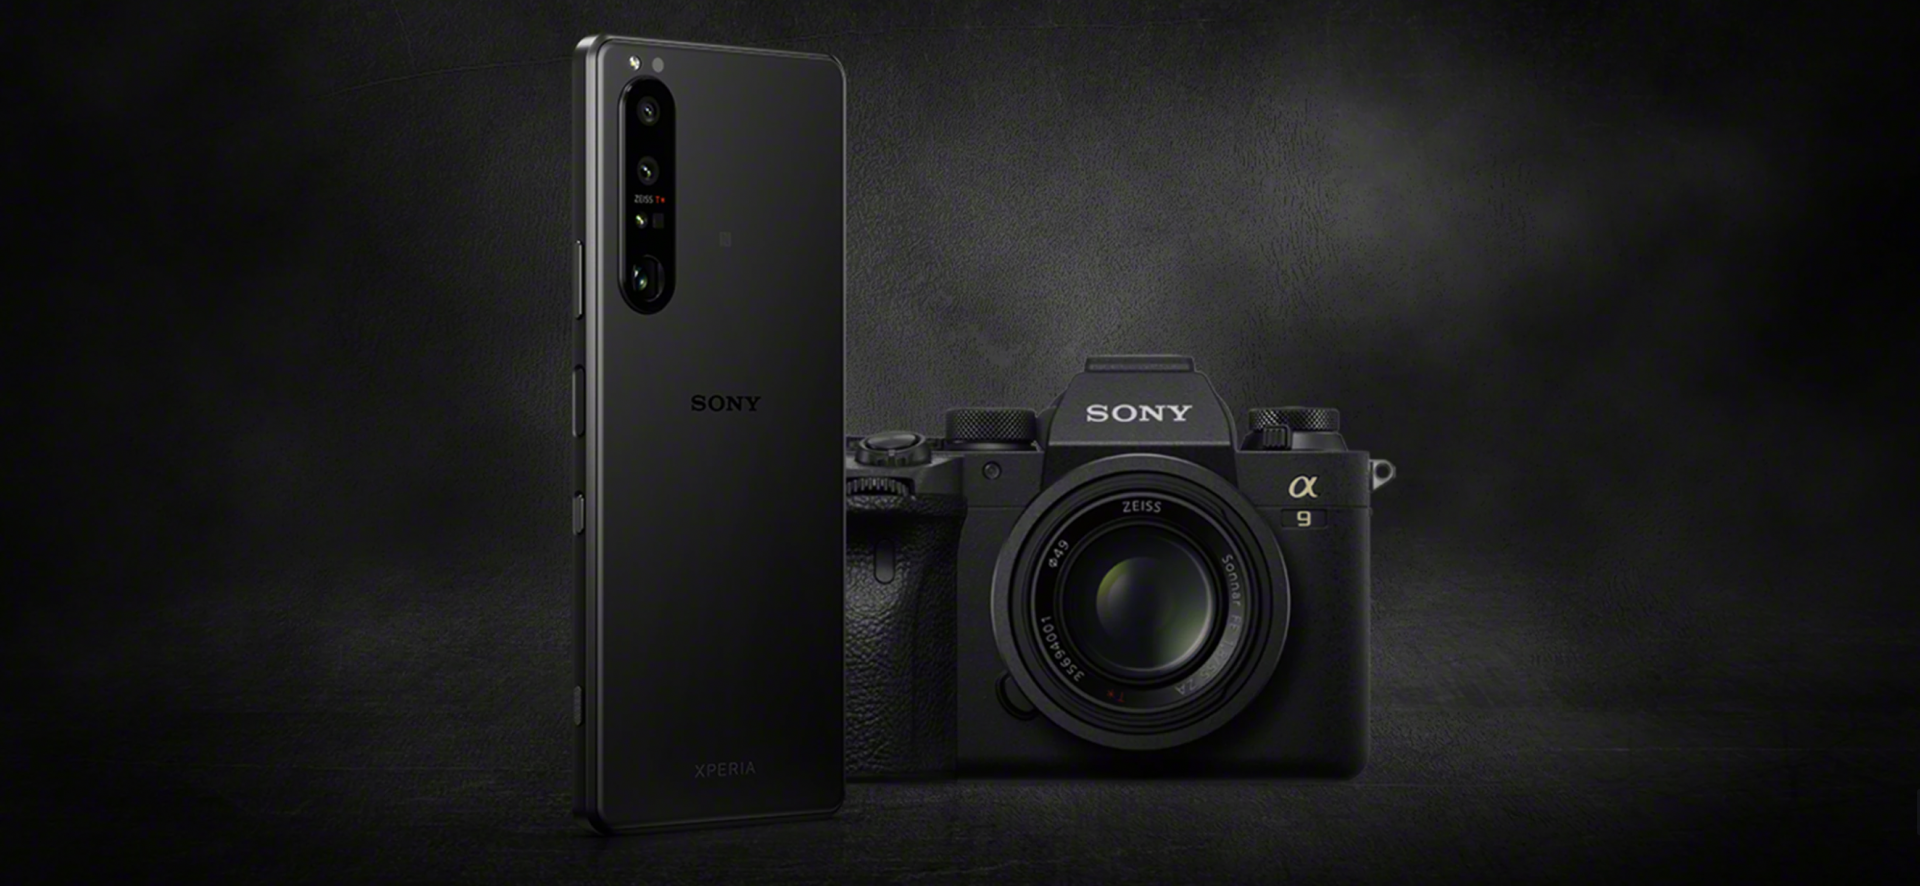 นี่มันไม่ใช่มือถือ นี่มันกล้อง.. Sony ไทยประกาศ เตรียมจำหน่าย Xperia 1 III เร็ว ๆ นี้!